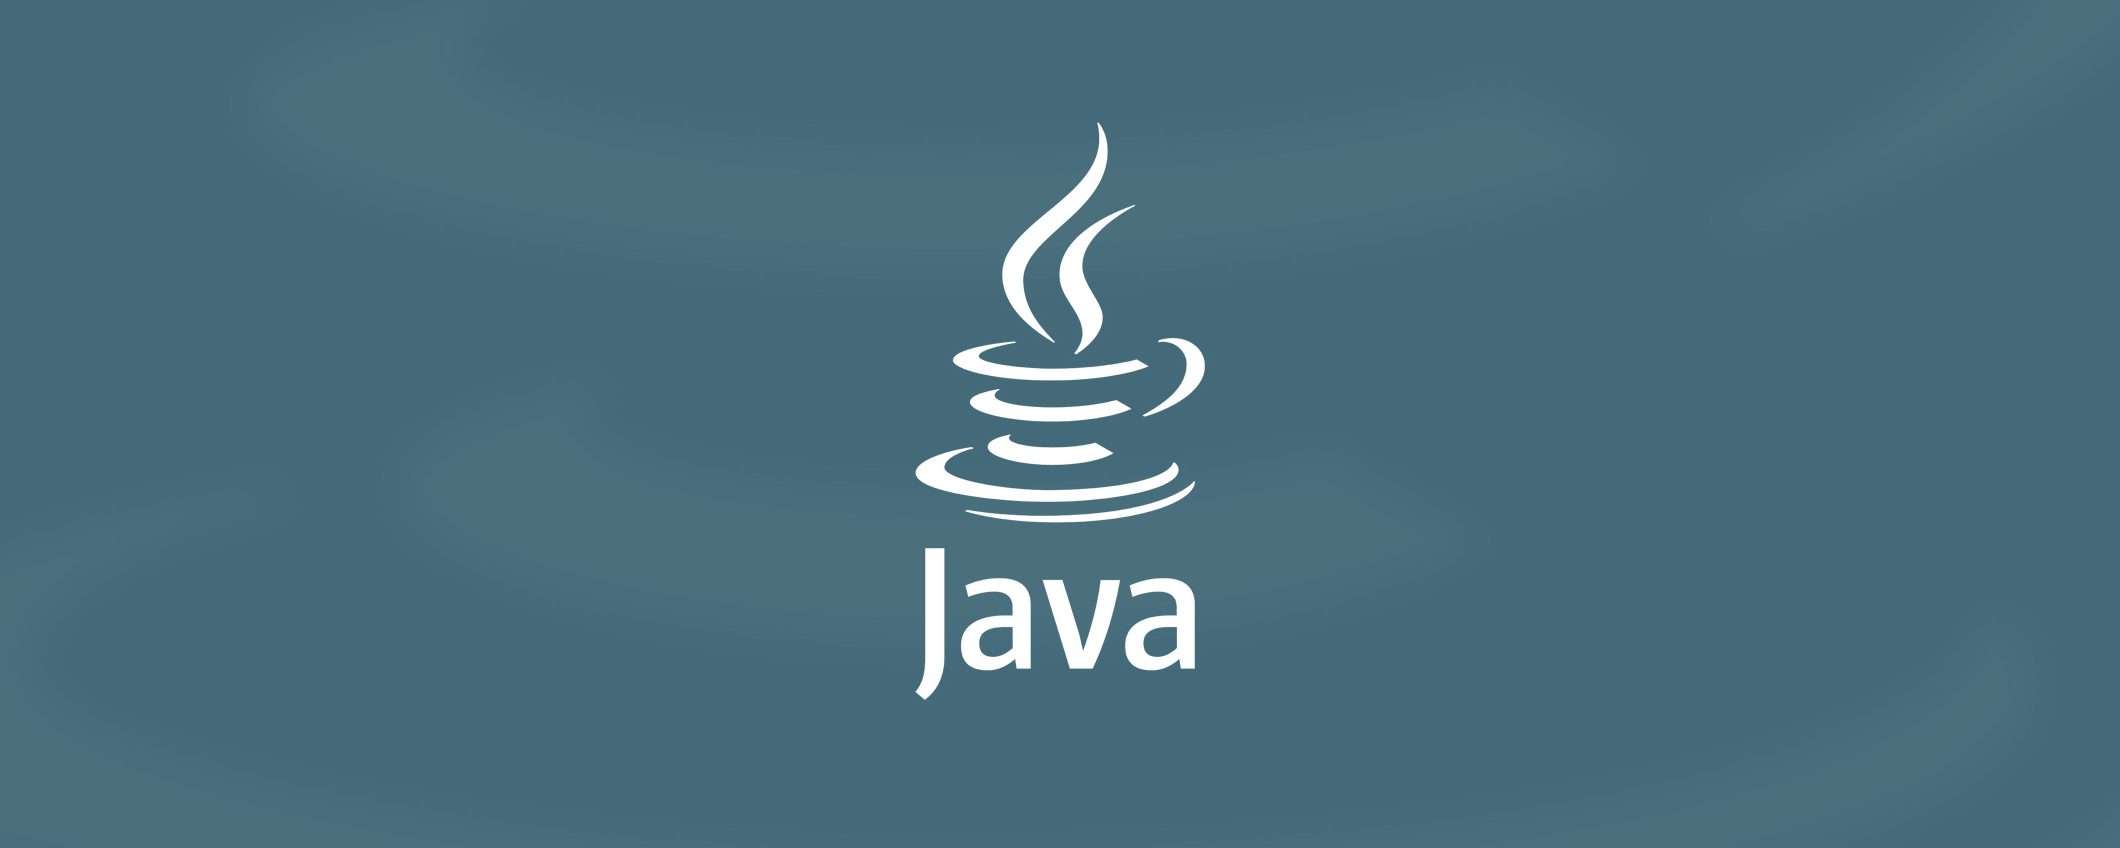 Java 19 è disponibile con sette macro-novità